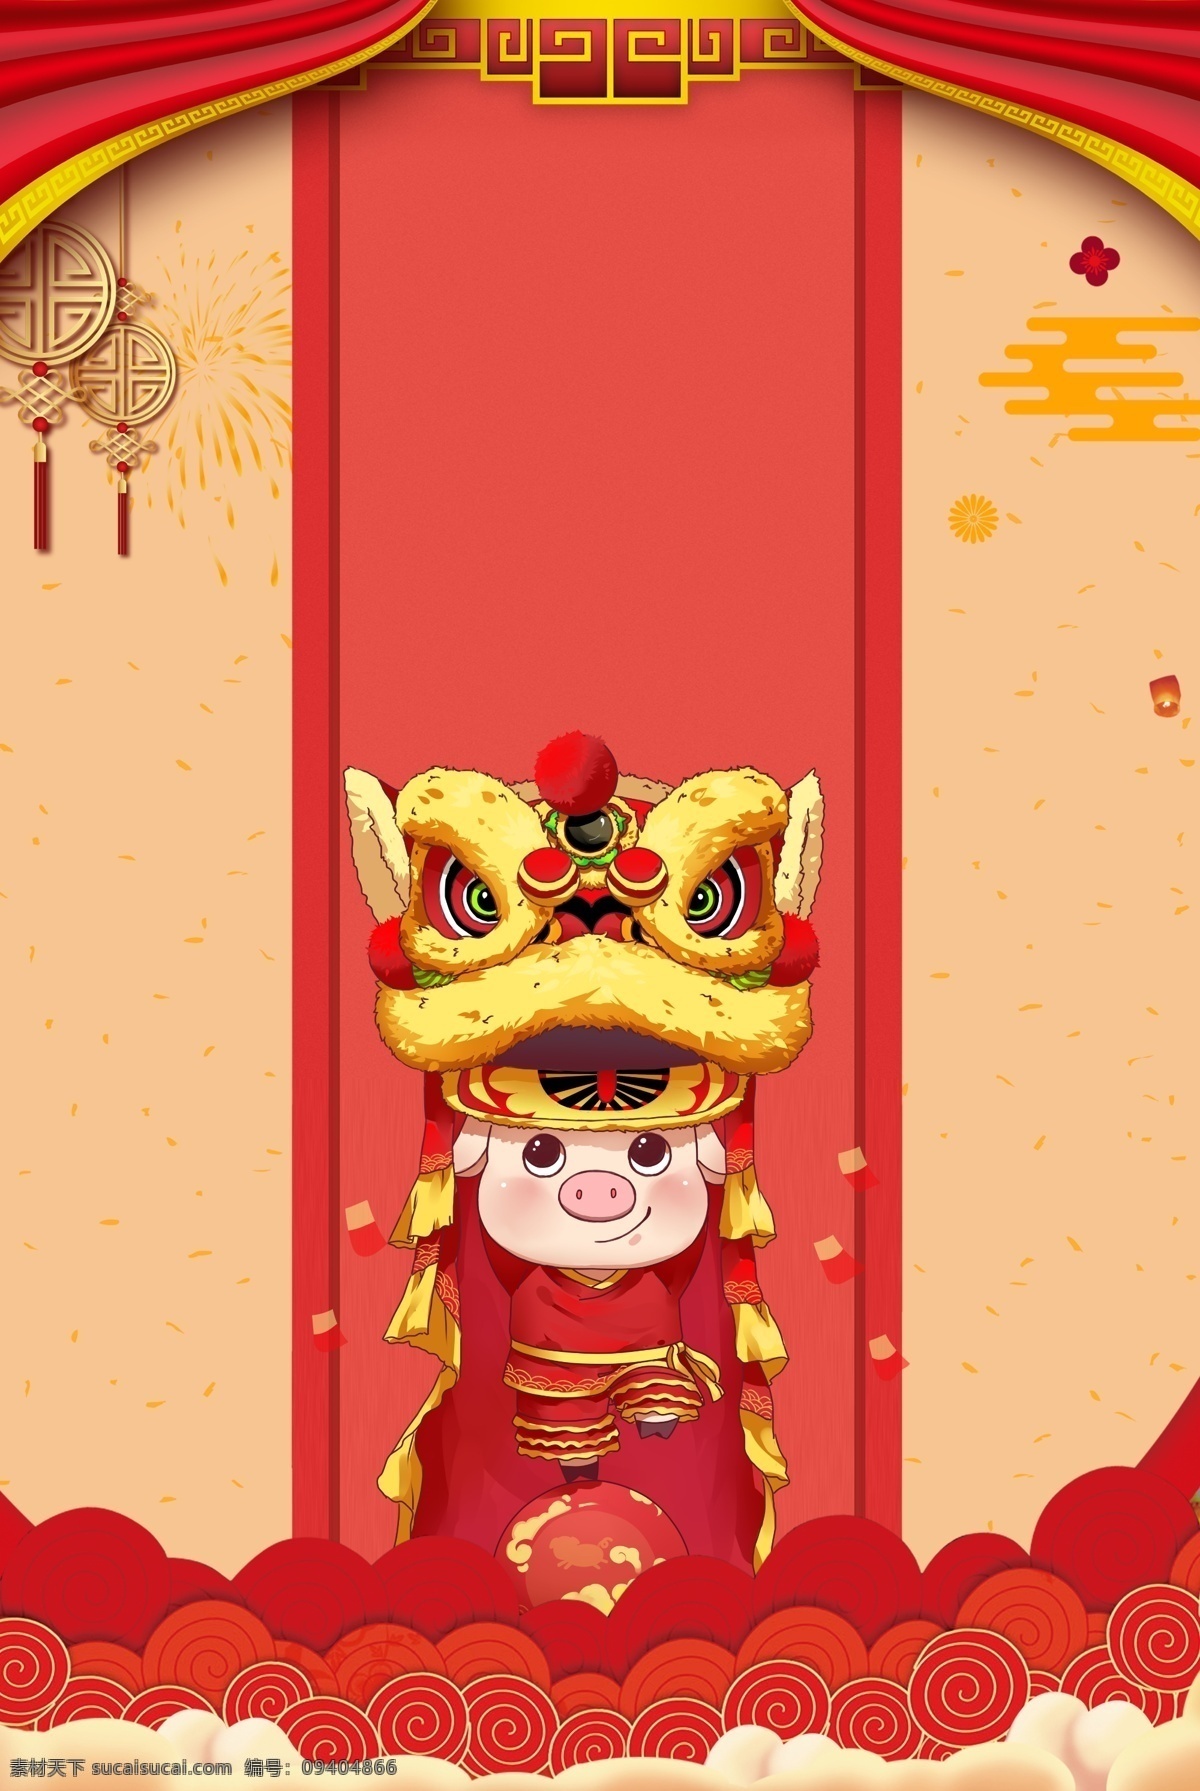 2019 己亥 猪年 快乐 海报 背景 新年 己亥猪年 新年狮子 新年舞狮 猪年快乐 红红火火 春节 舞狮